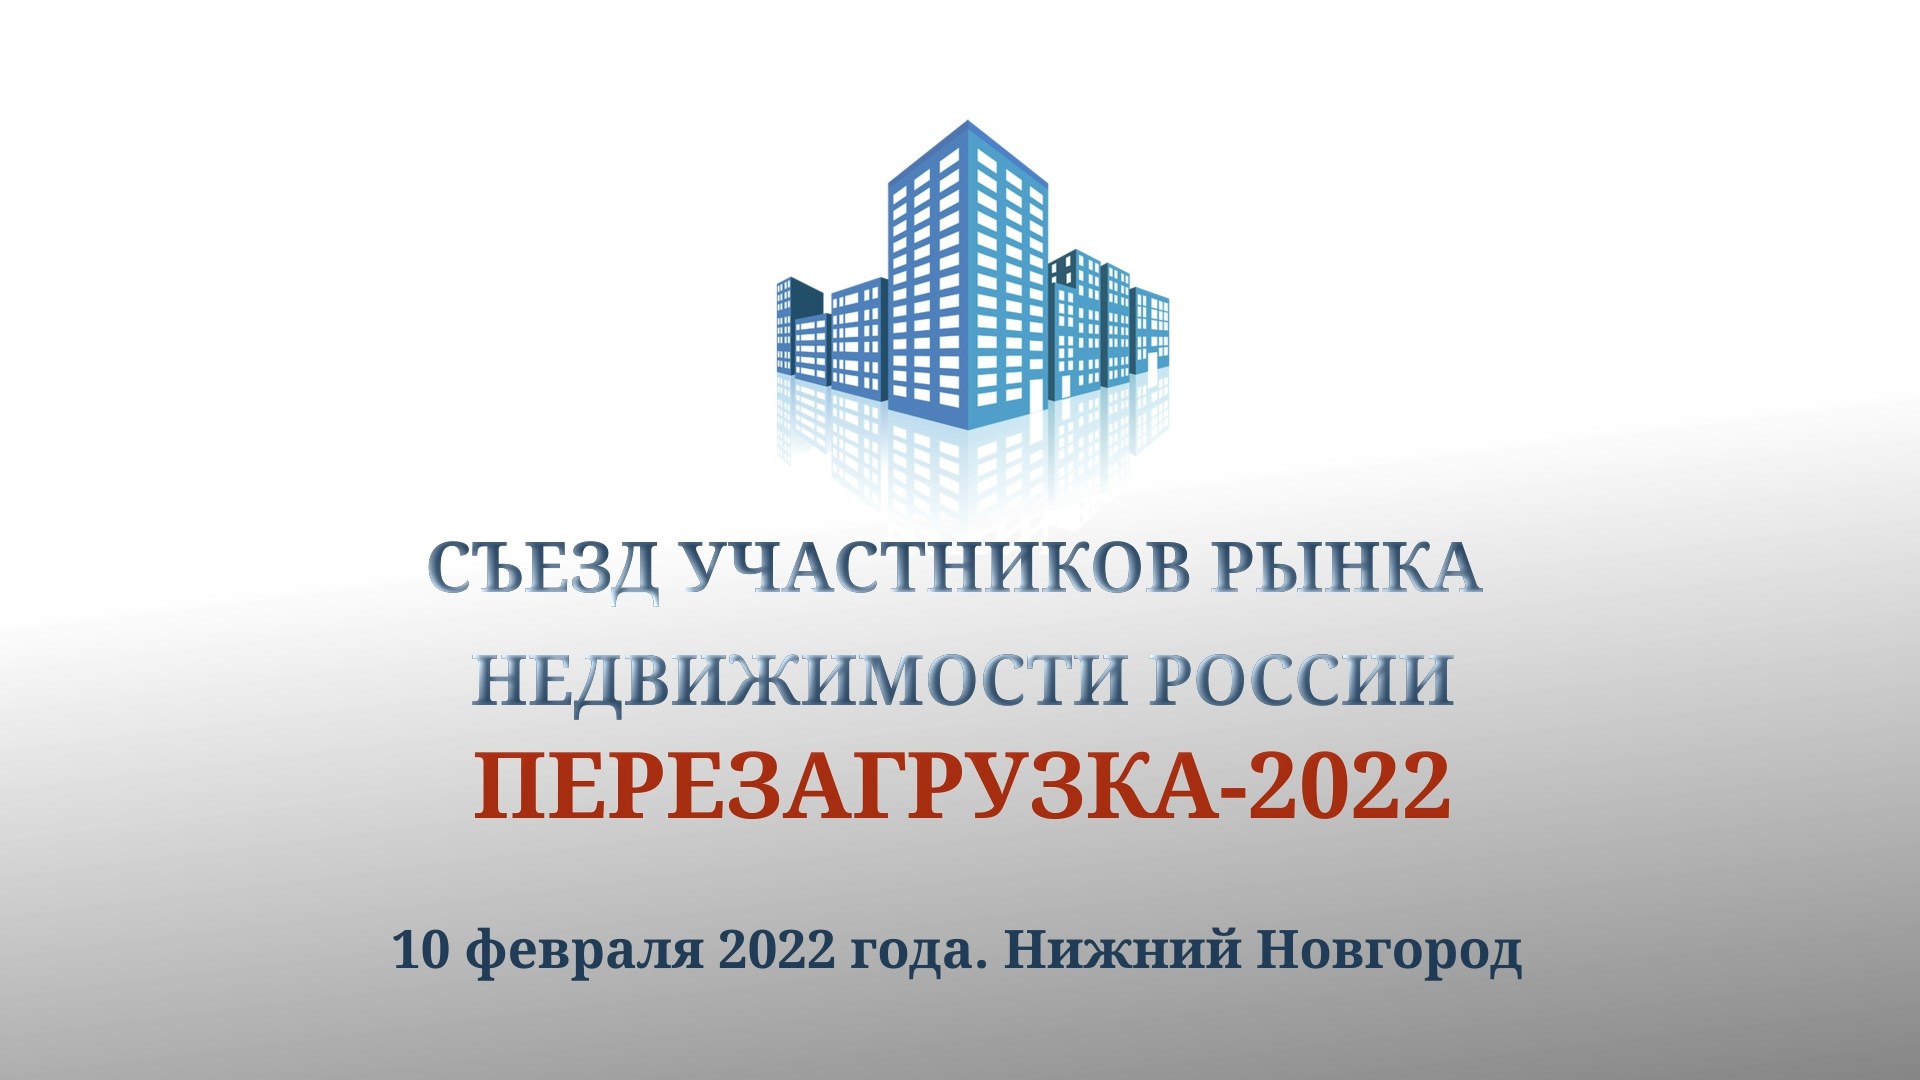 Анонс II Съезда участников рынка недвижимости «Перезагрузка 2022».